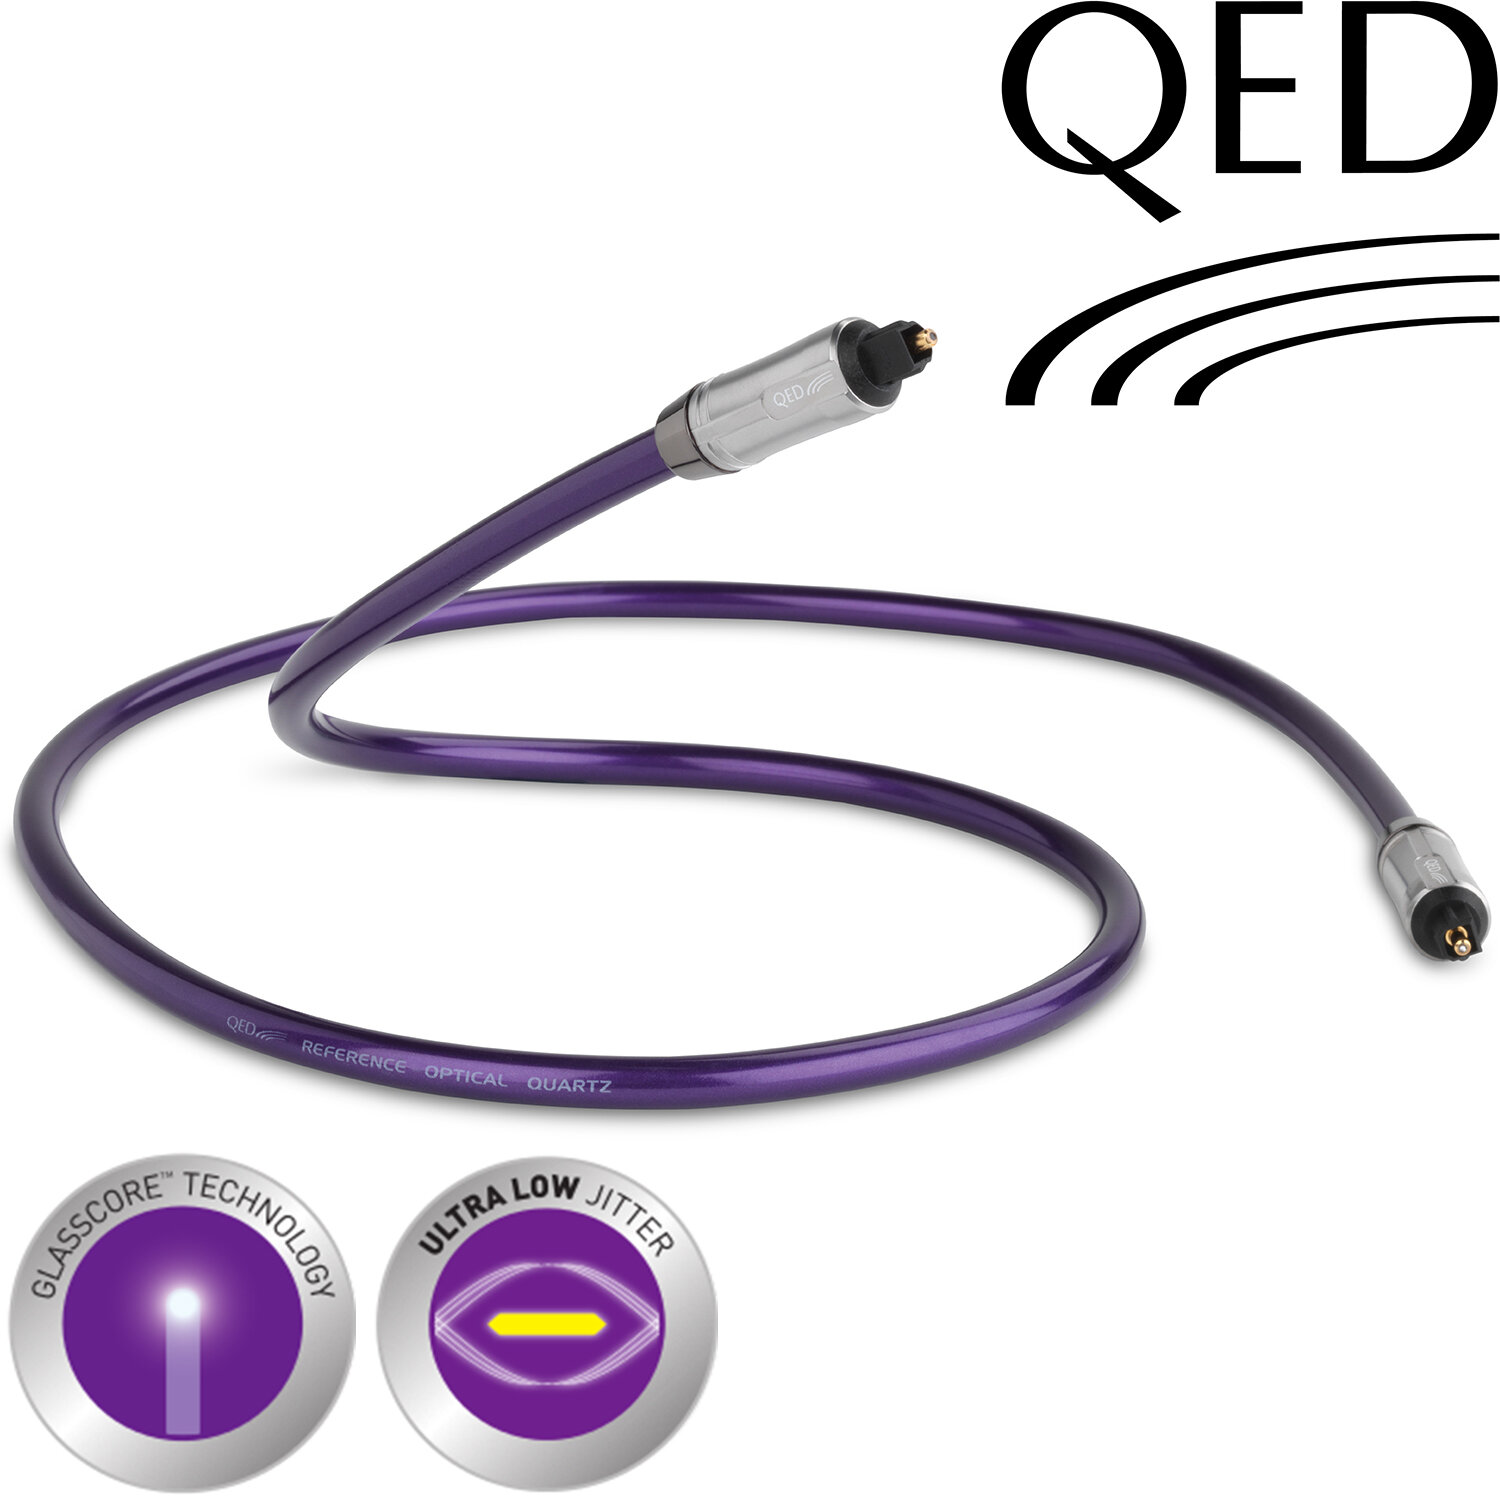 QED Reference Optical QUARTZ (QE3315) 1.5m